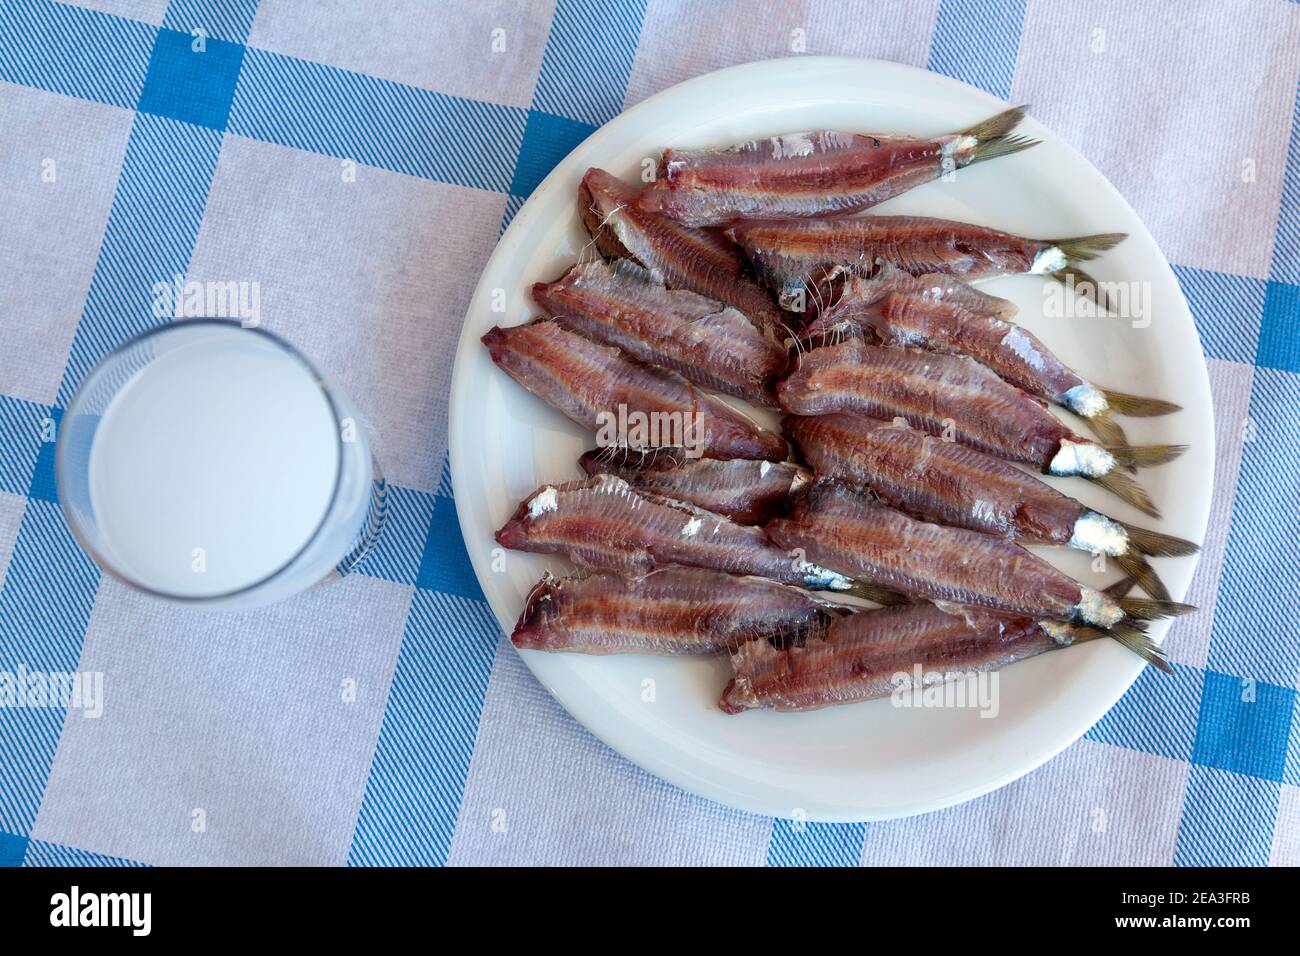 Gesalzene Sardinen, eine beliebte Fischfeinheit von Kalloni, Insel Lesvos, Griechenland, die jetzt als Produkt der geschützten Ursprungsbezeichnung anerkannt ist Stockfoto